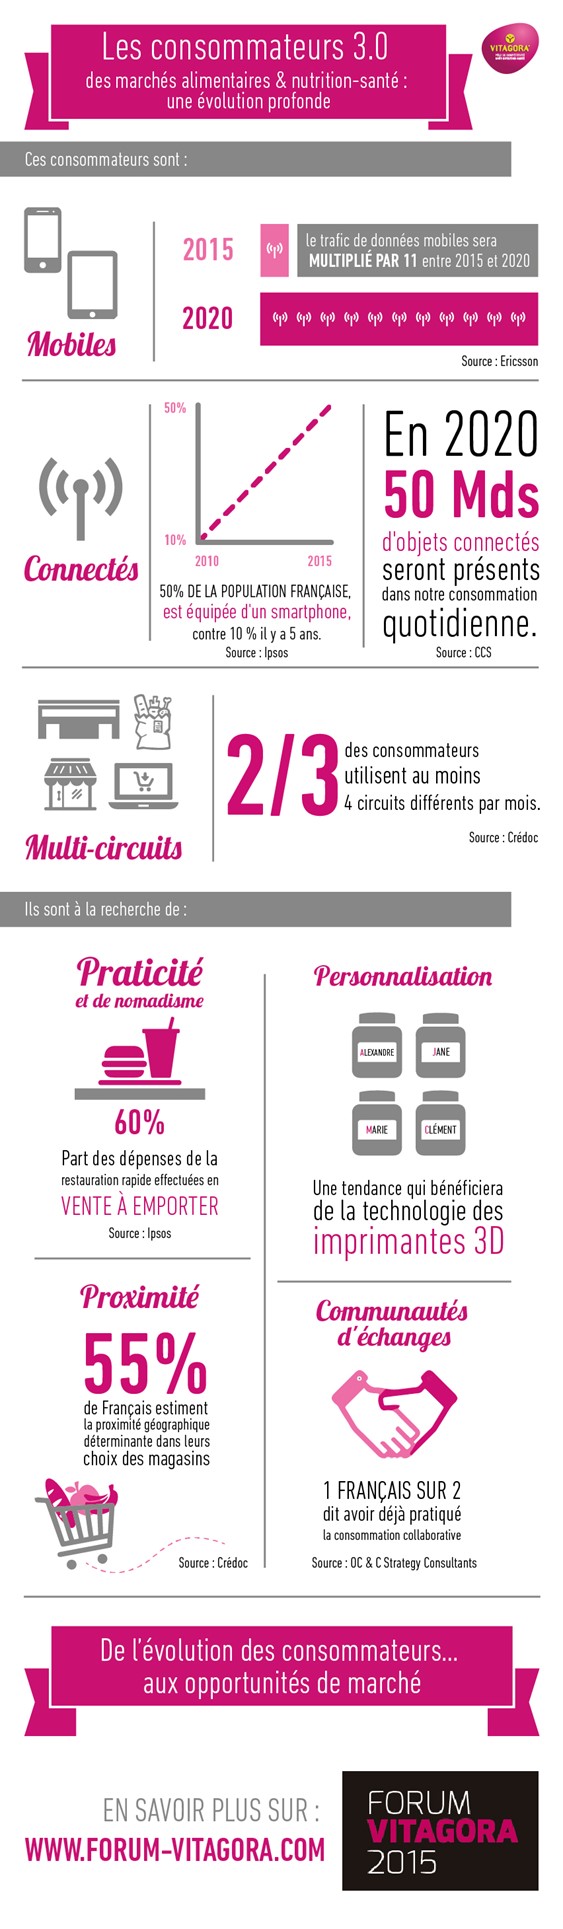 Qui sont les consommateurs 3.0 ? Infographie Forum Vitagora 2015